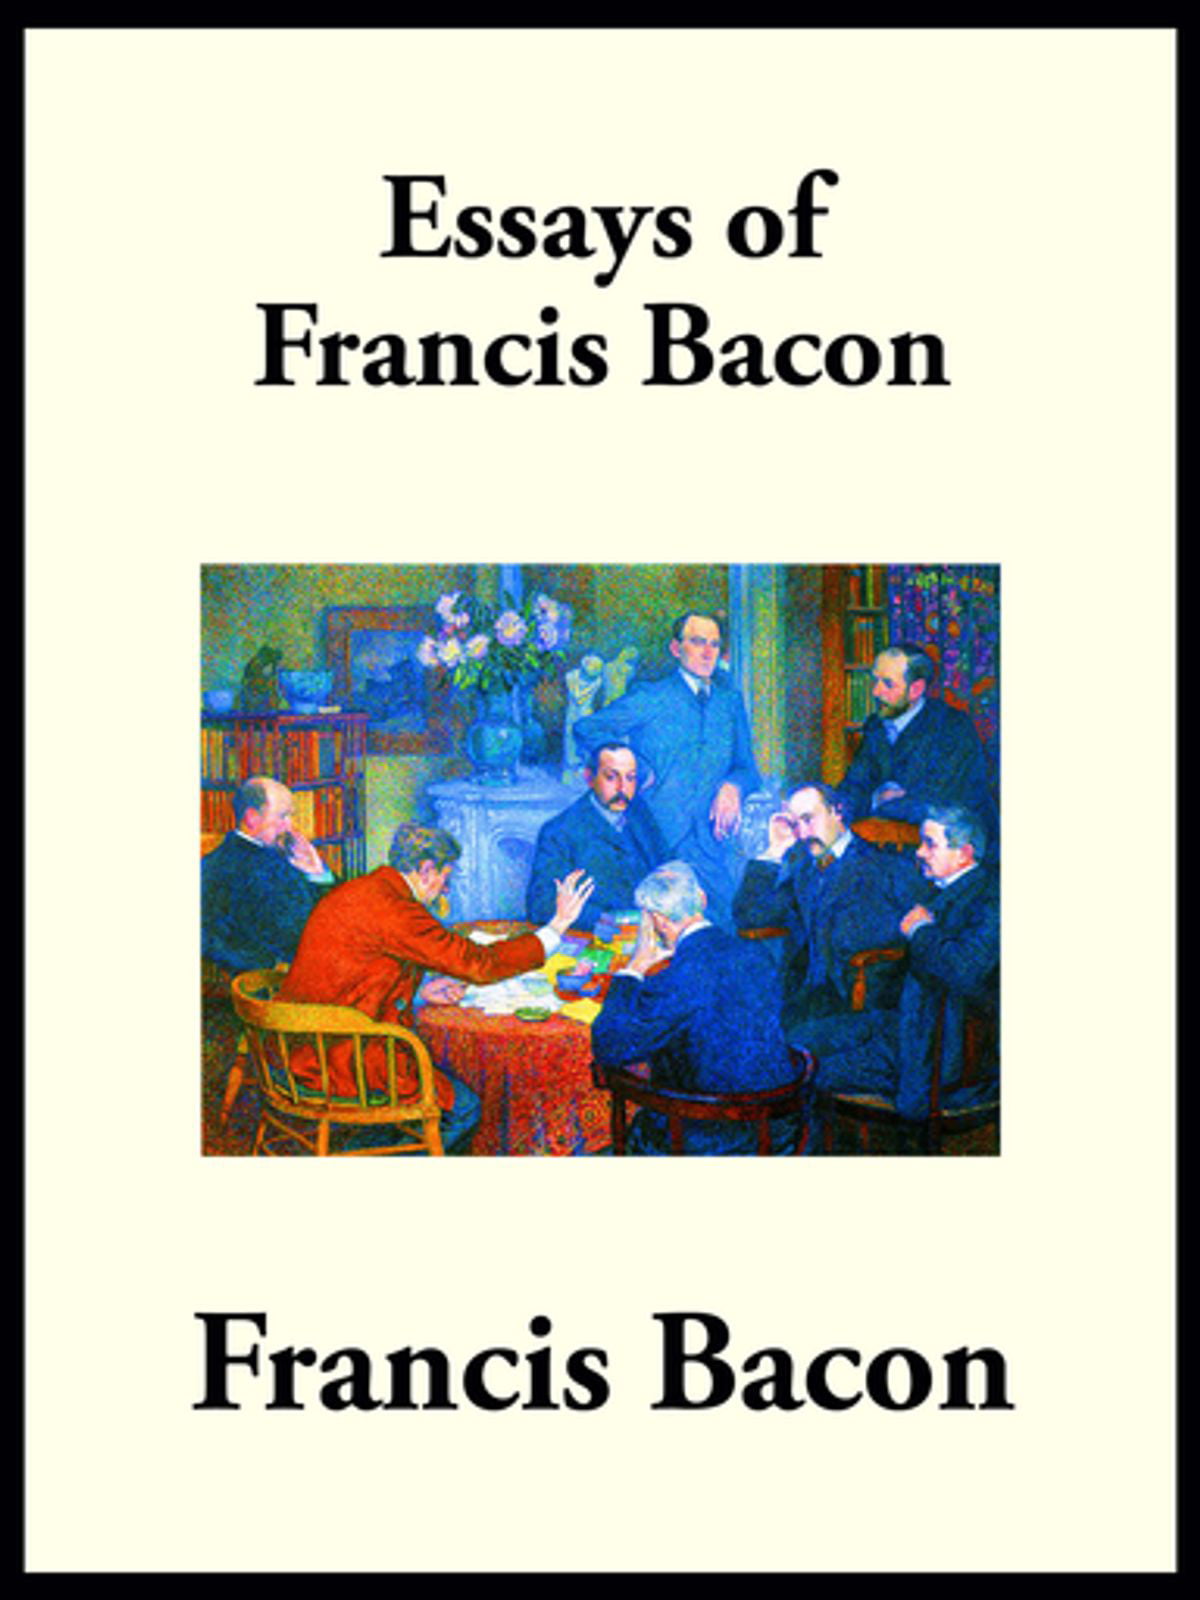 francis bacon summary of essays